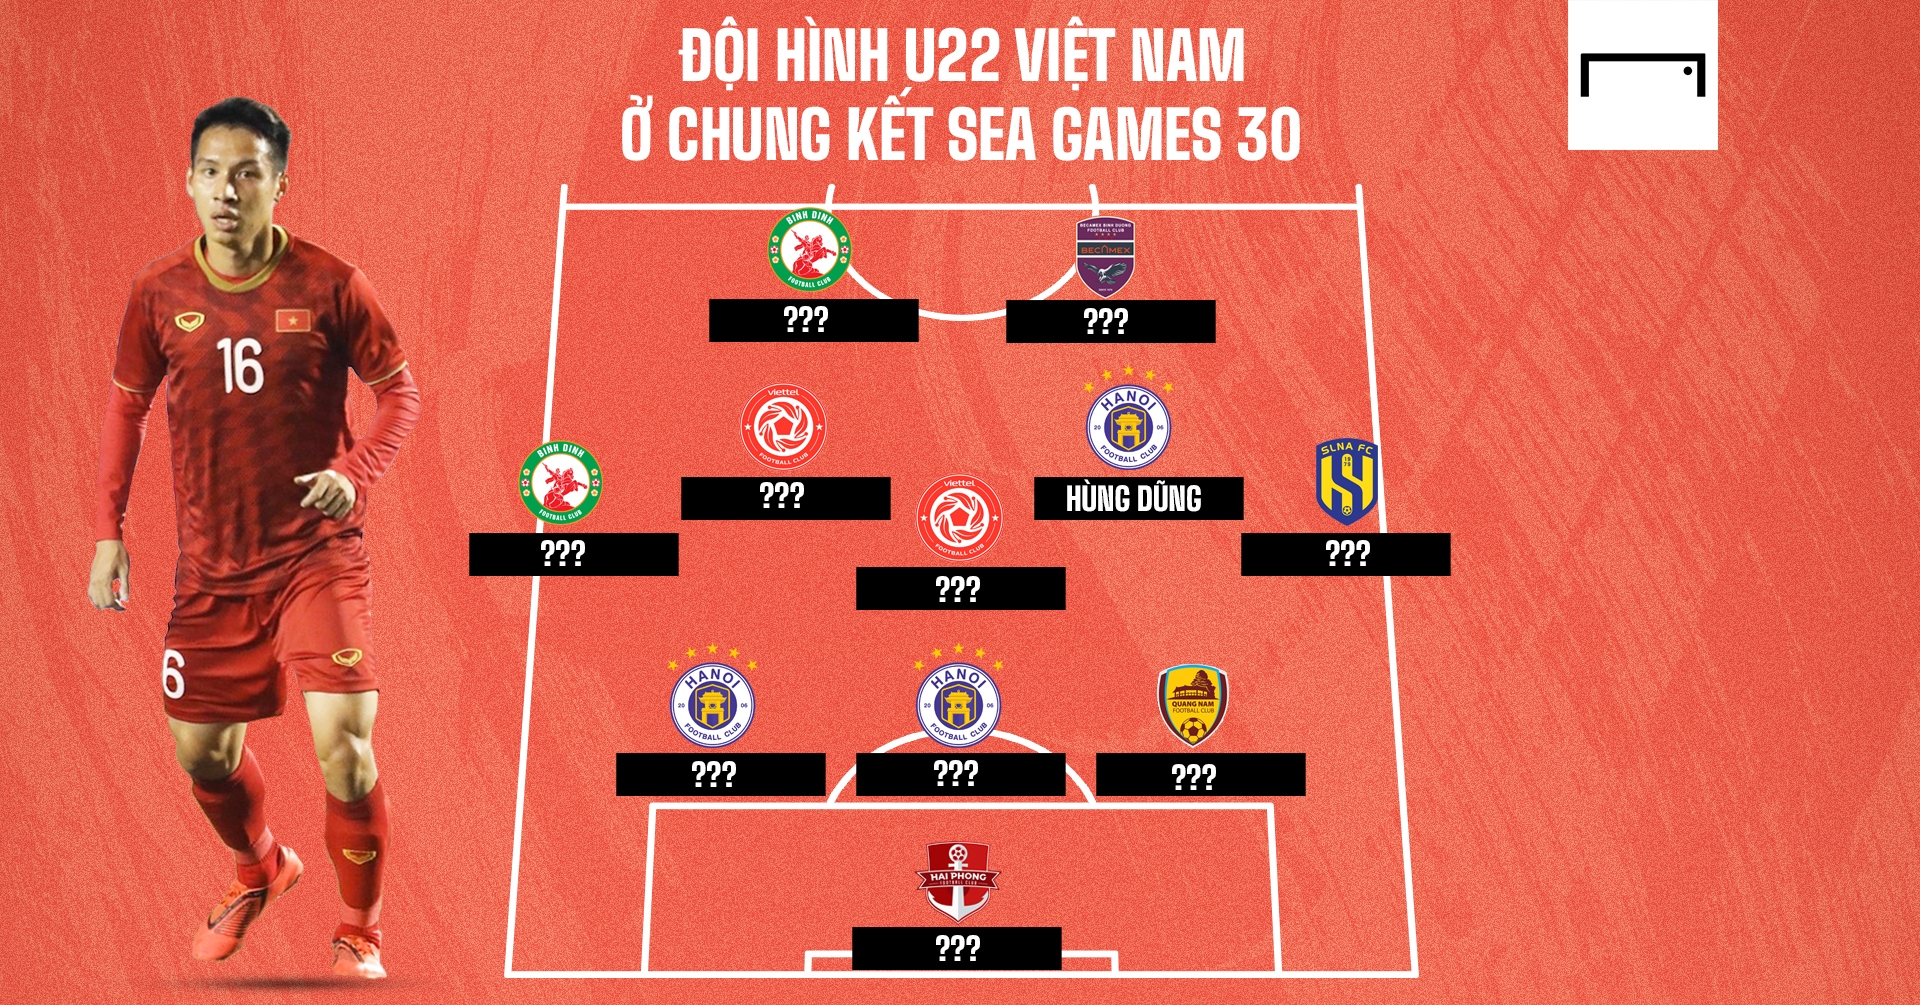 Đội hình U22 Việt Nam vào chung kết SEA Games 30 giờ ra sao? | Goal.com Việt Nam